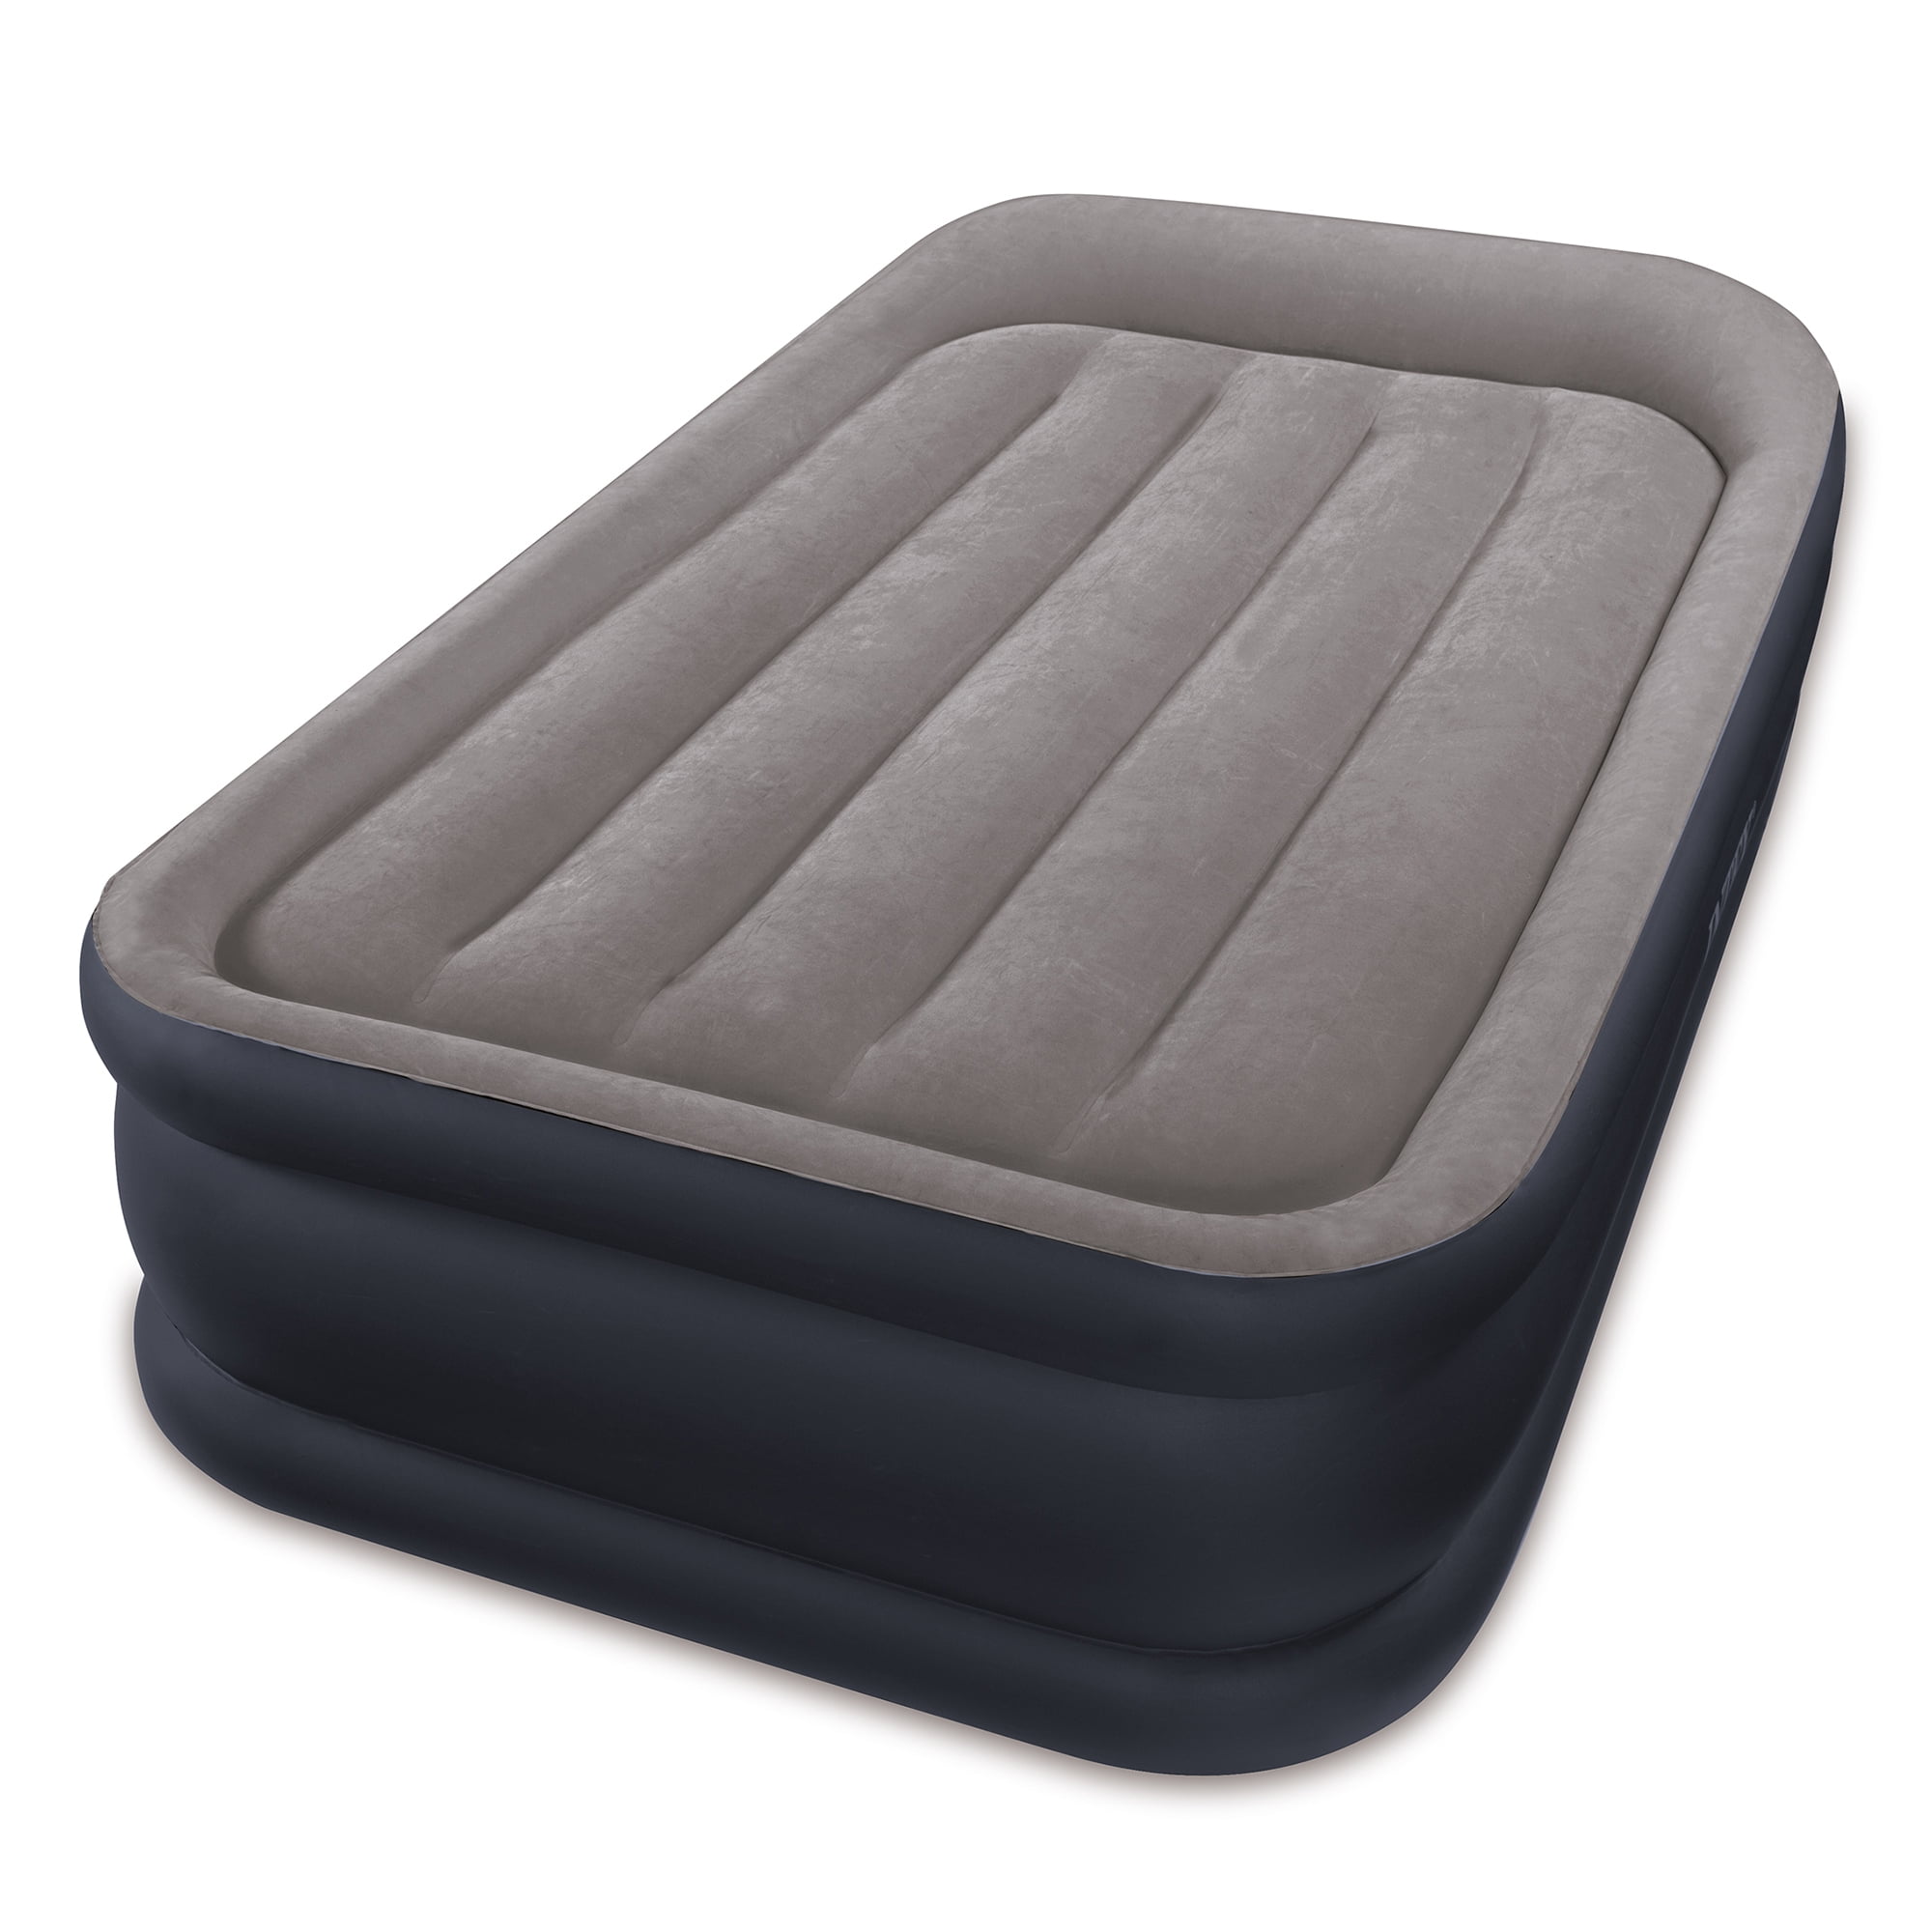 Colchón hinchable Intex Dura-Beam Standard Deluxe Pillow